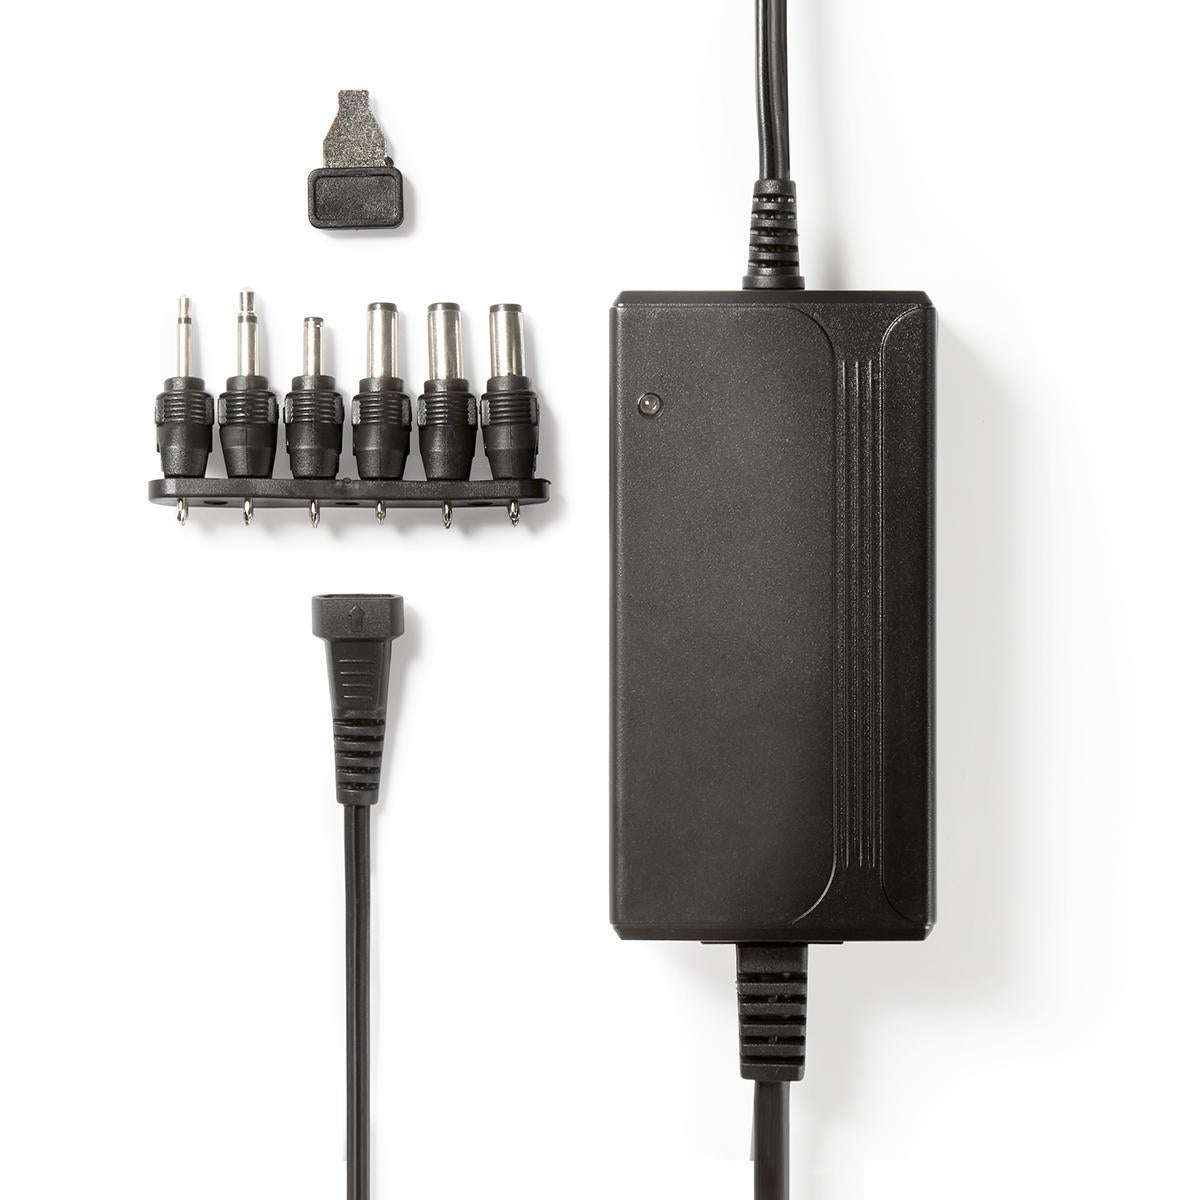 Universal-Netzteil | 27 W | 3 - 12 V DC | 3.60 m | 2.25 A A | 6 plug(s) | Schwarz